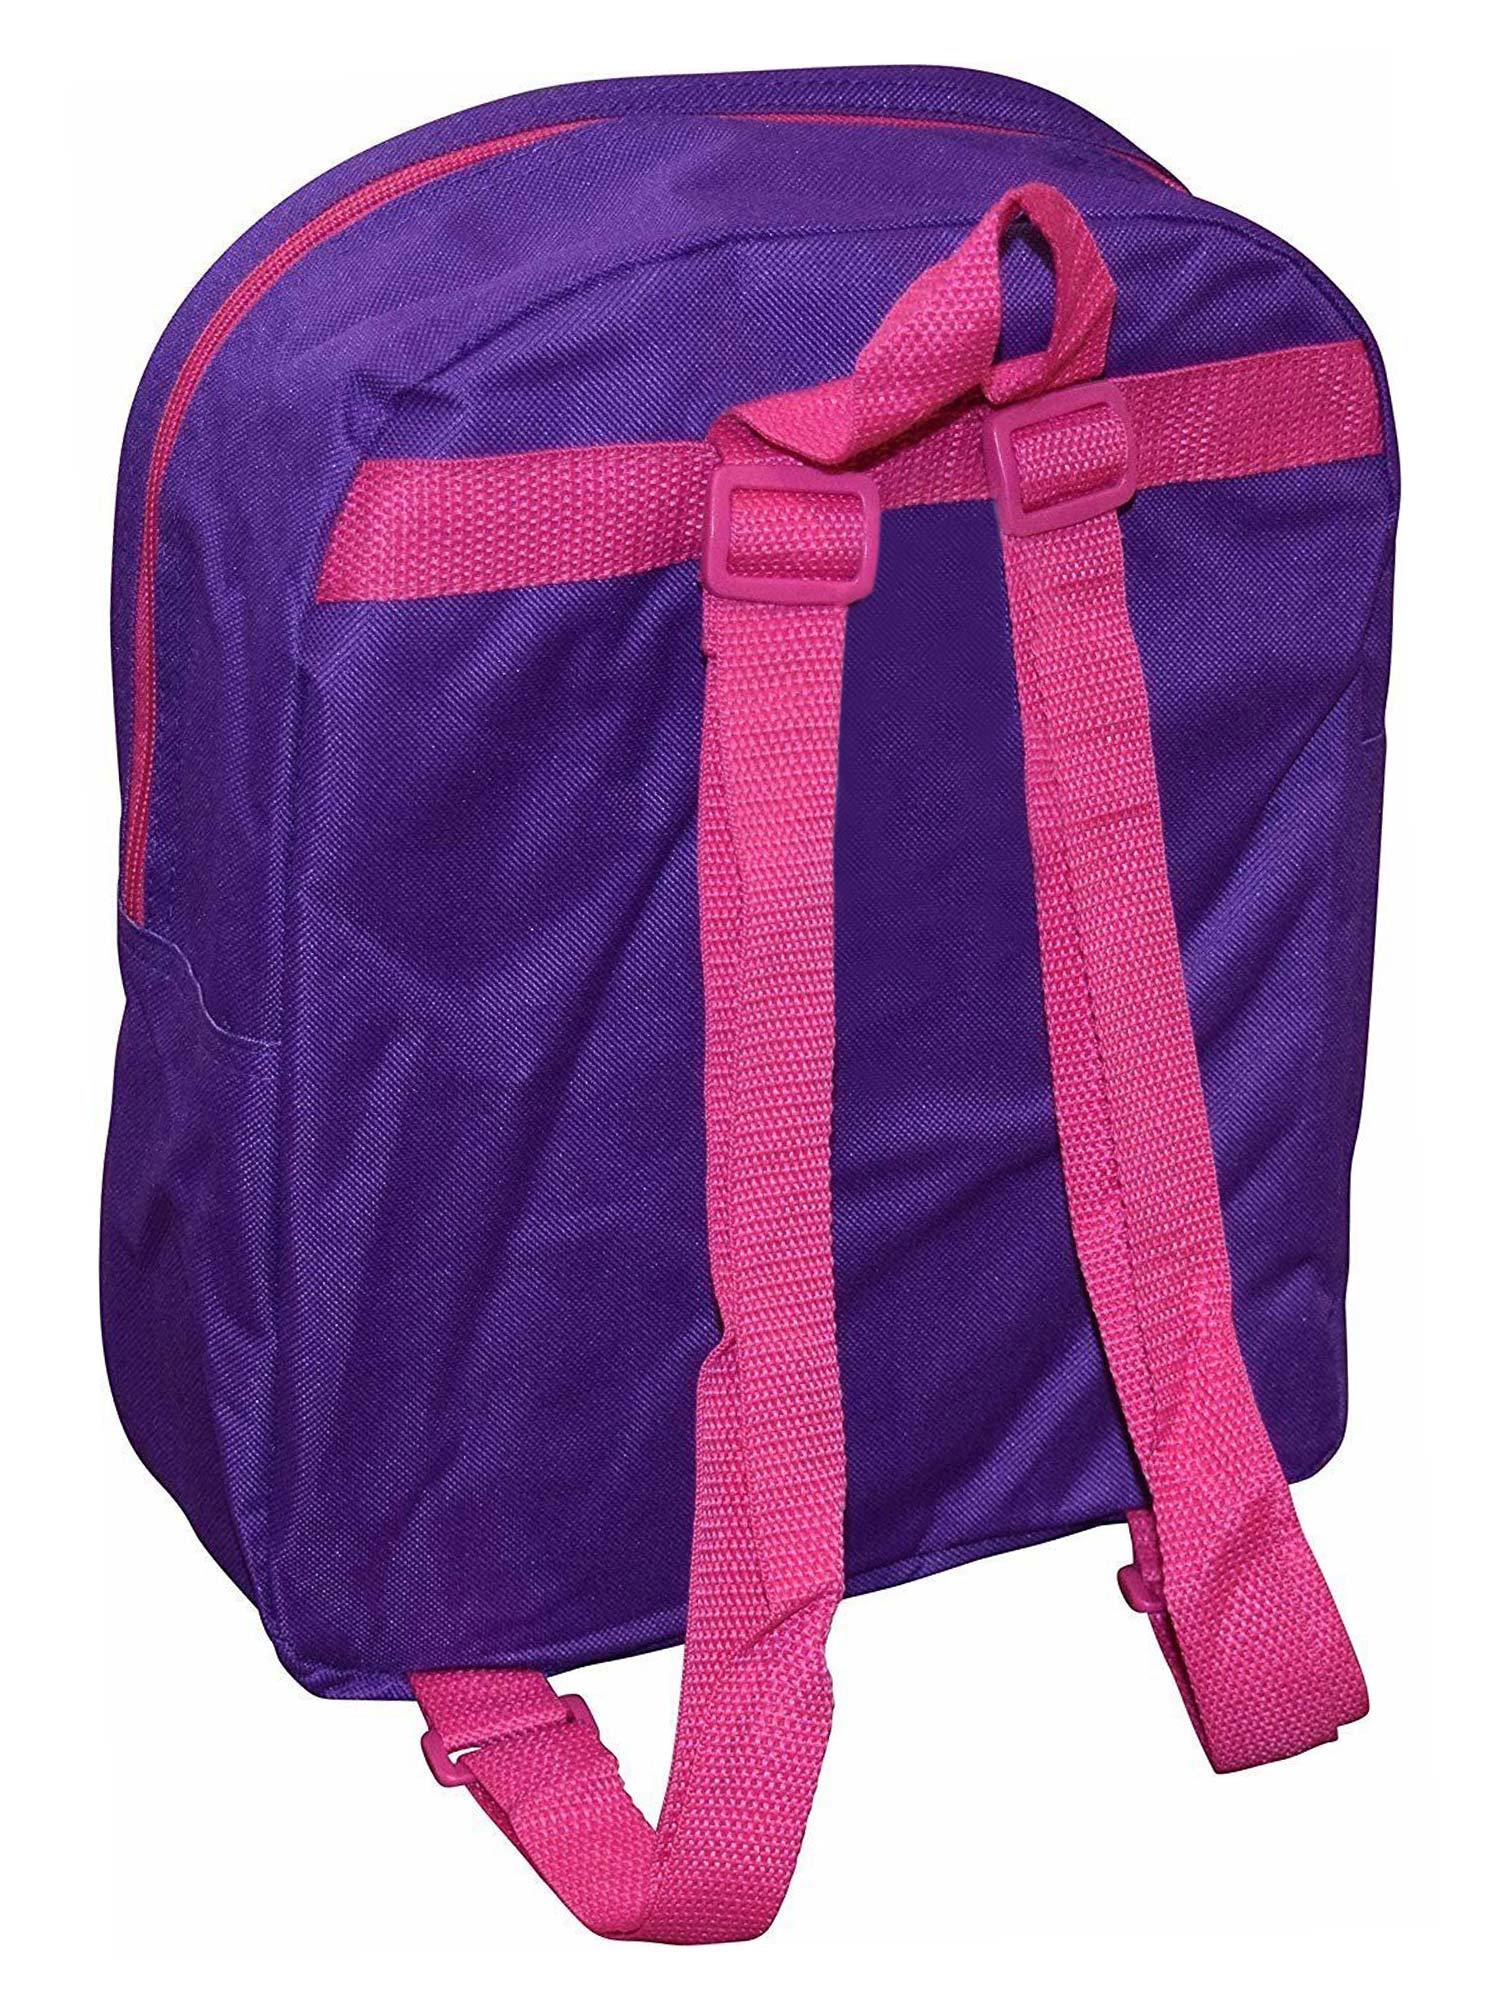 Girls Vampirina Mini Backpack 12" Purple Wolfie - image 3 of 3